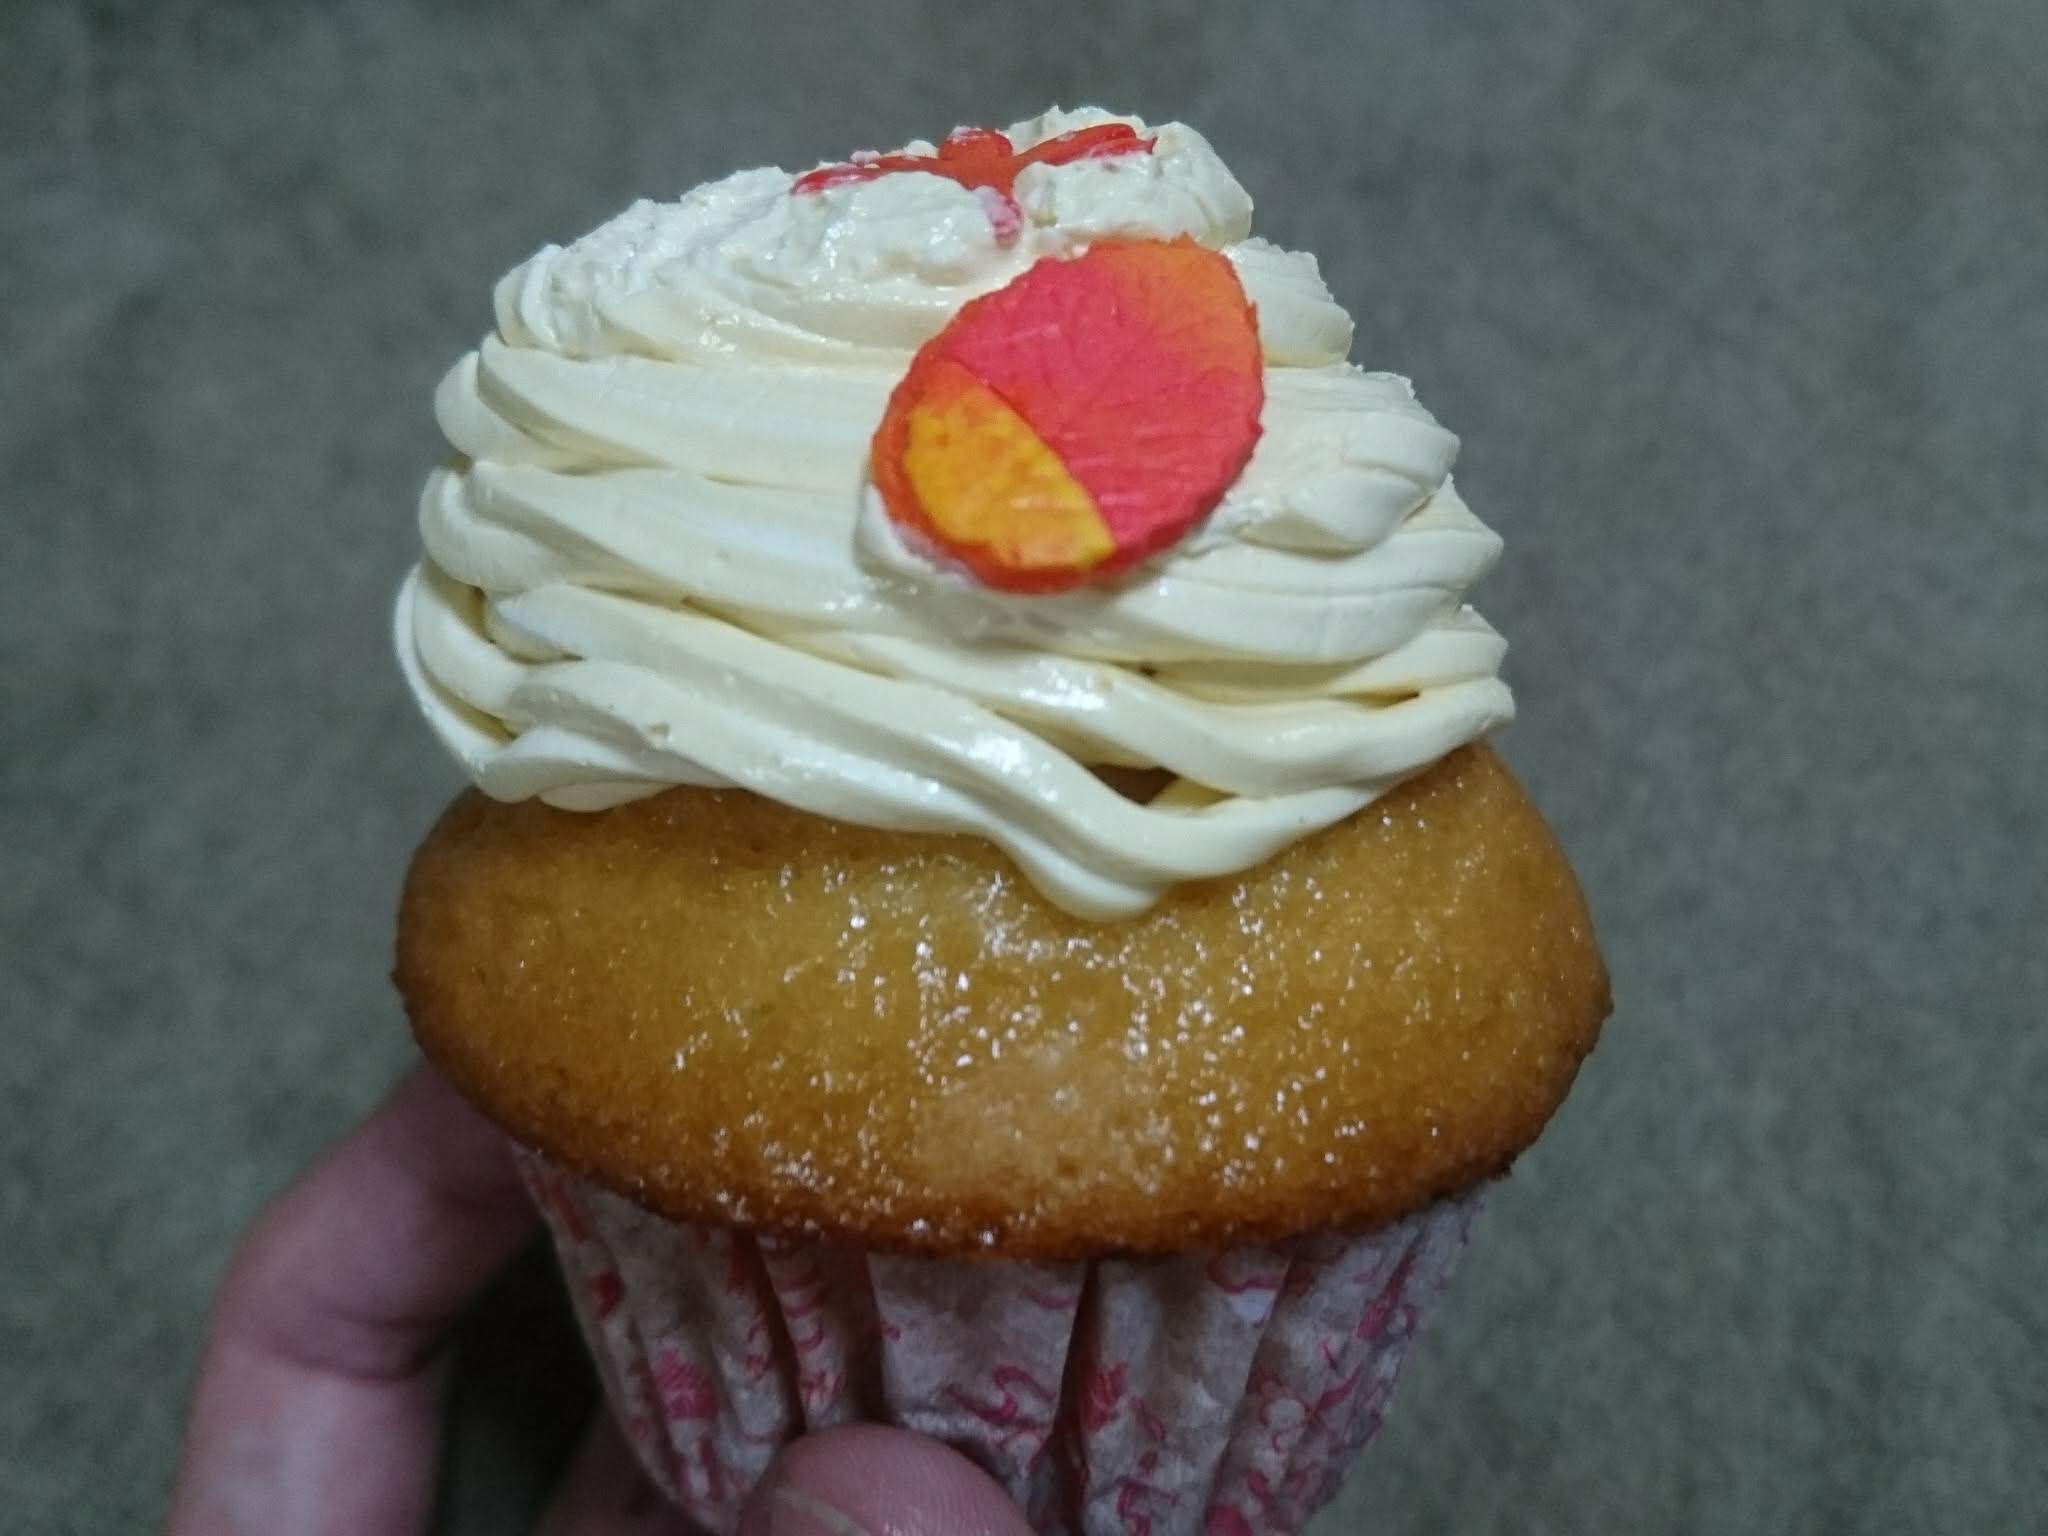 サリーズカップケーキ サッポロファクトリー店 円山裏参道の人気カップケーキ店がサッポロファクトリーにオープン さぁ自由をはじめようか